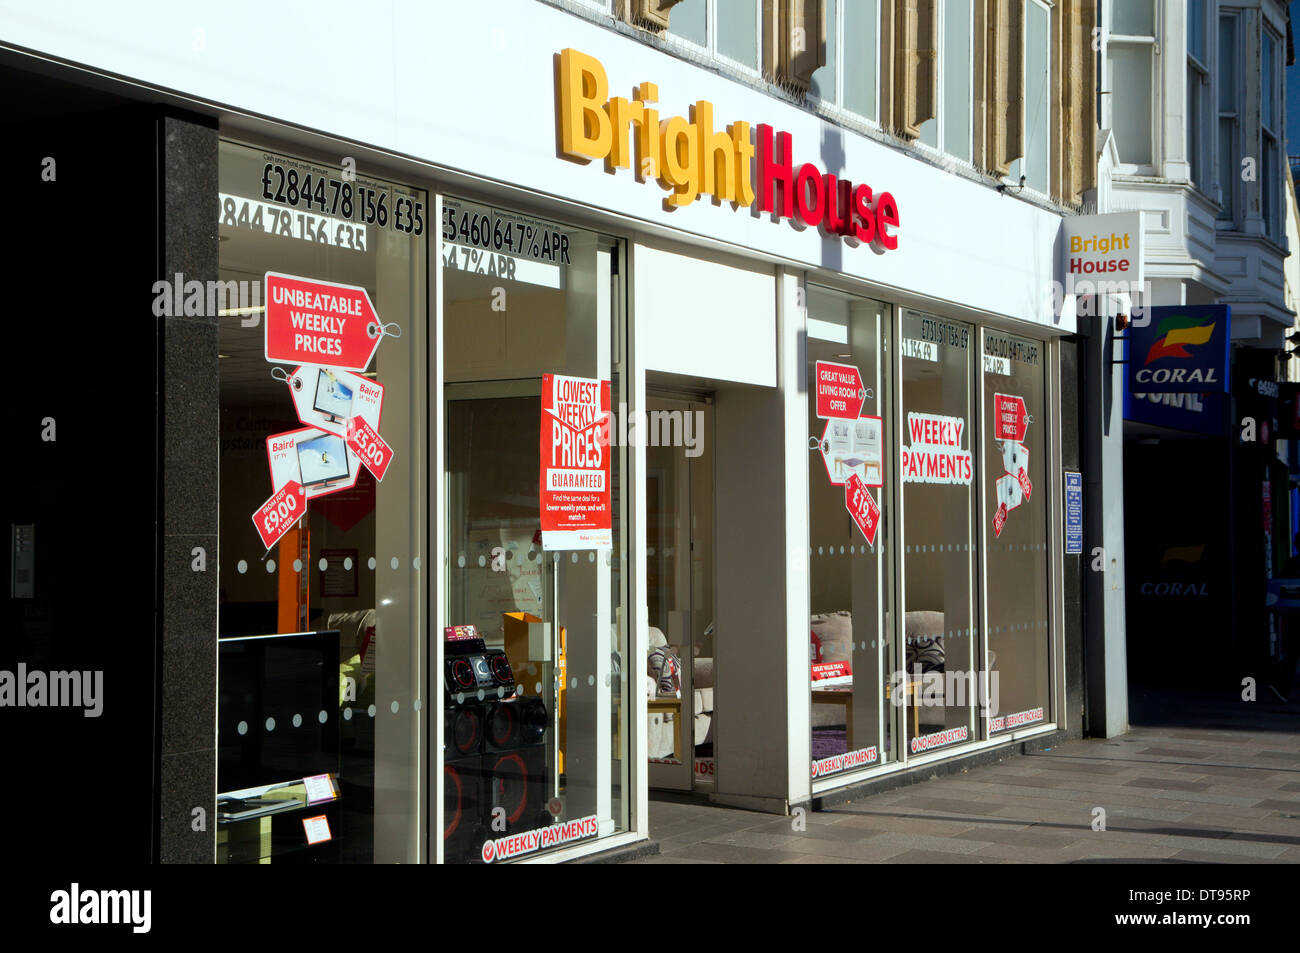 Maison lumineuse shop, le centre-ville de Cardiff, Pays de Galles. Banque D'Images